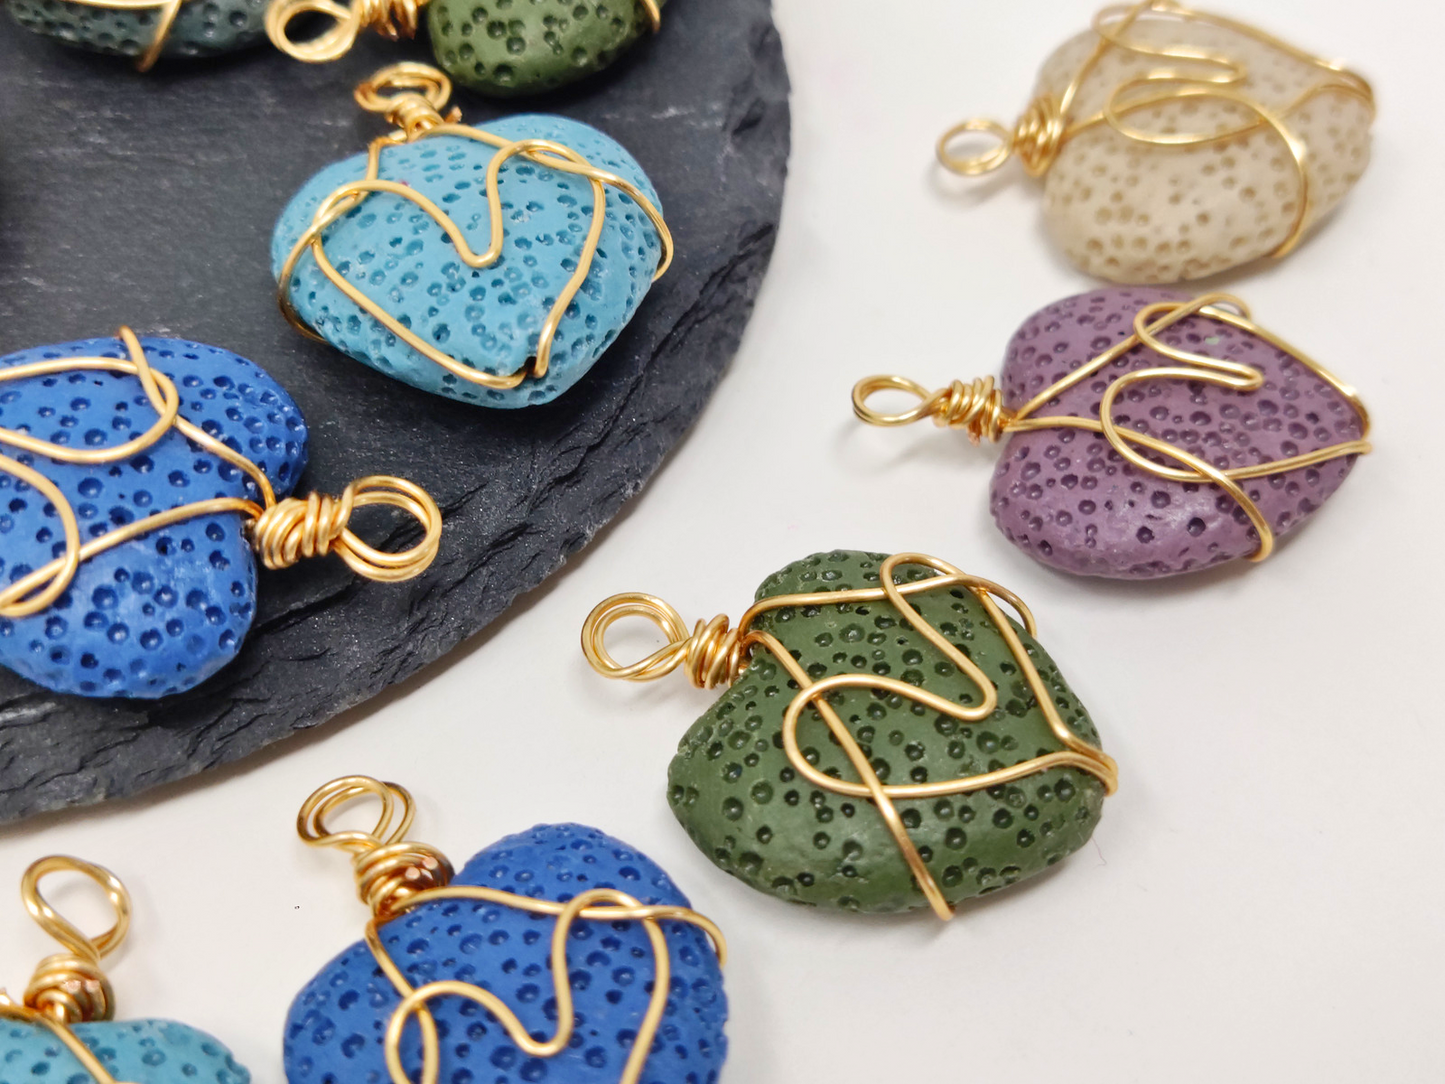 Lava Gemstone Beads Copper Wire Wrap Pendant Necklace Charm, 1pcs